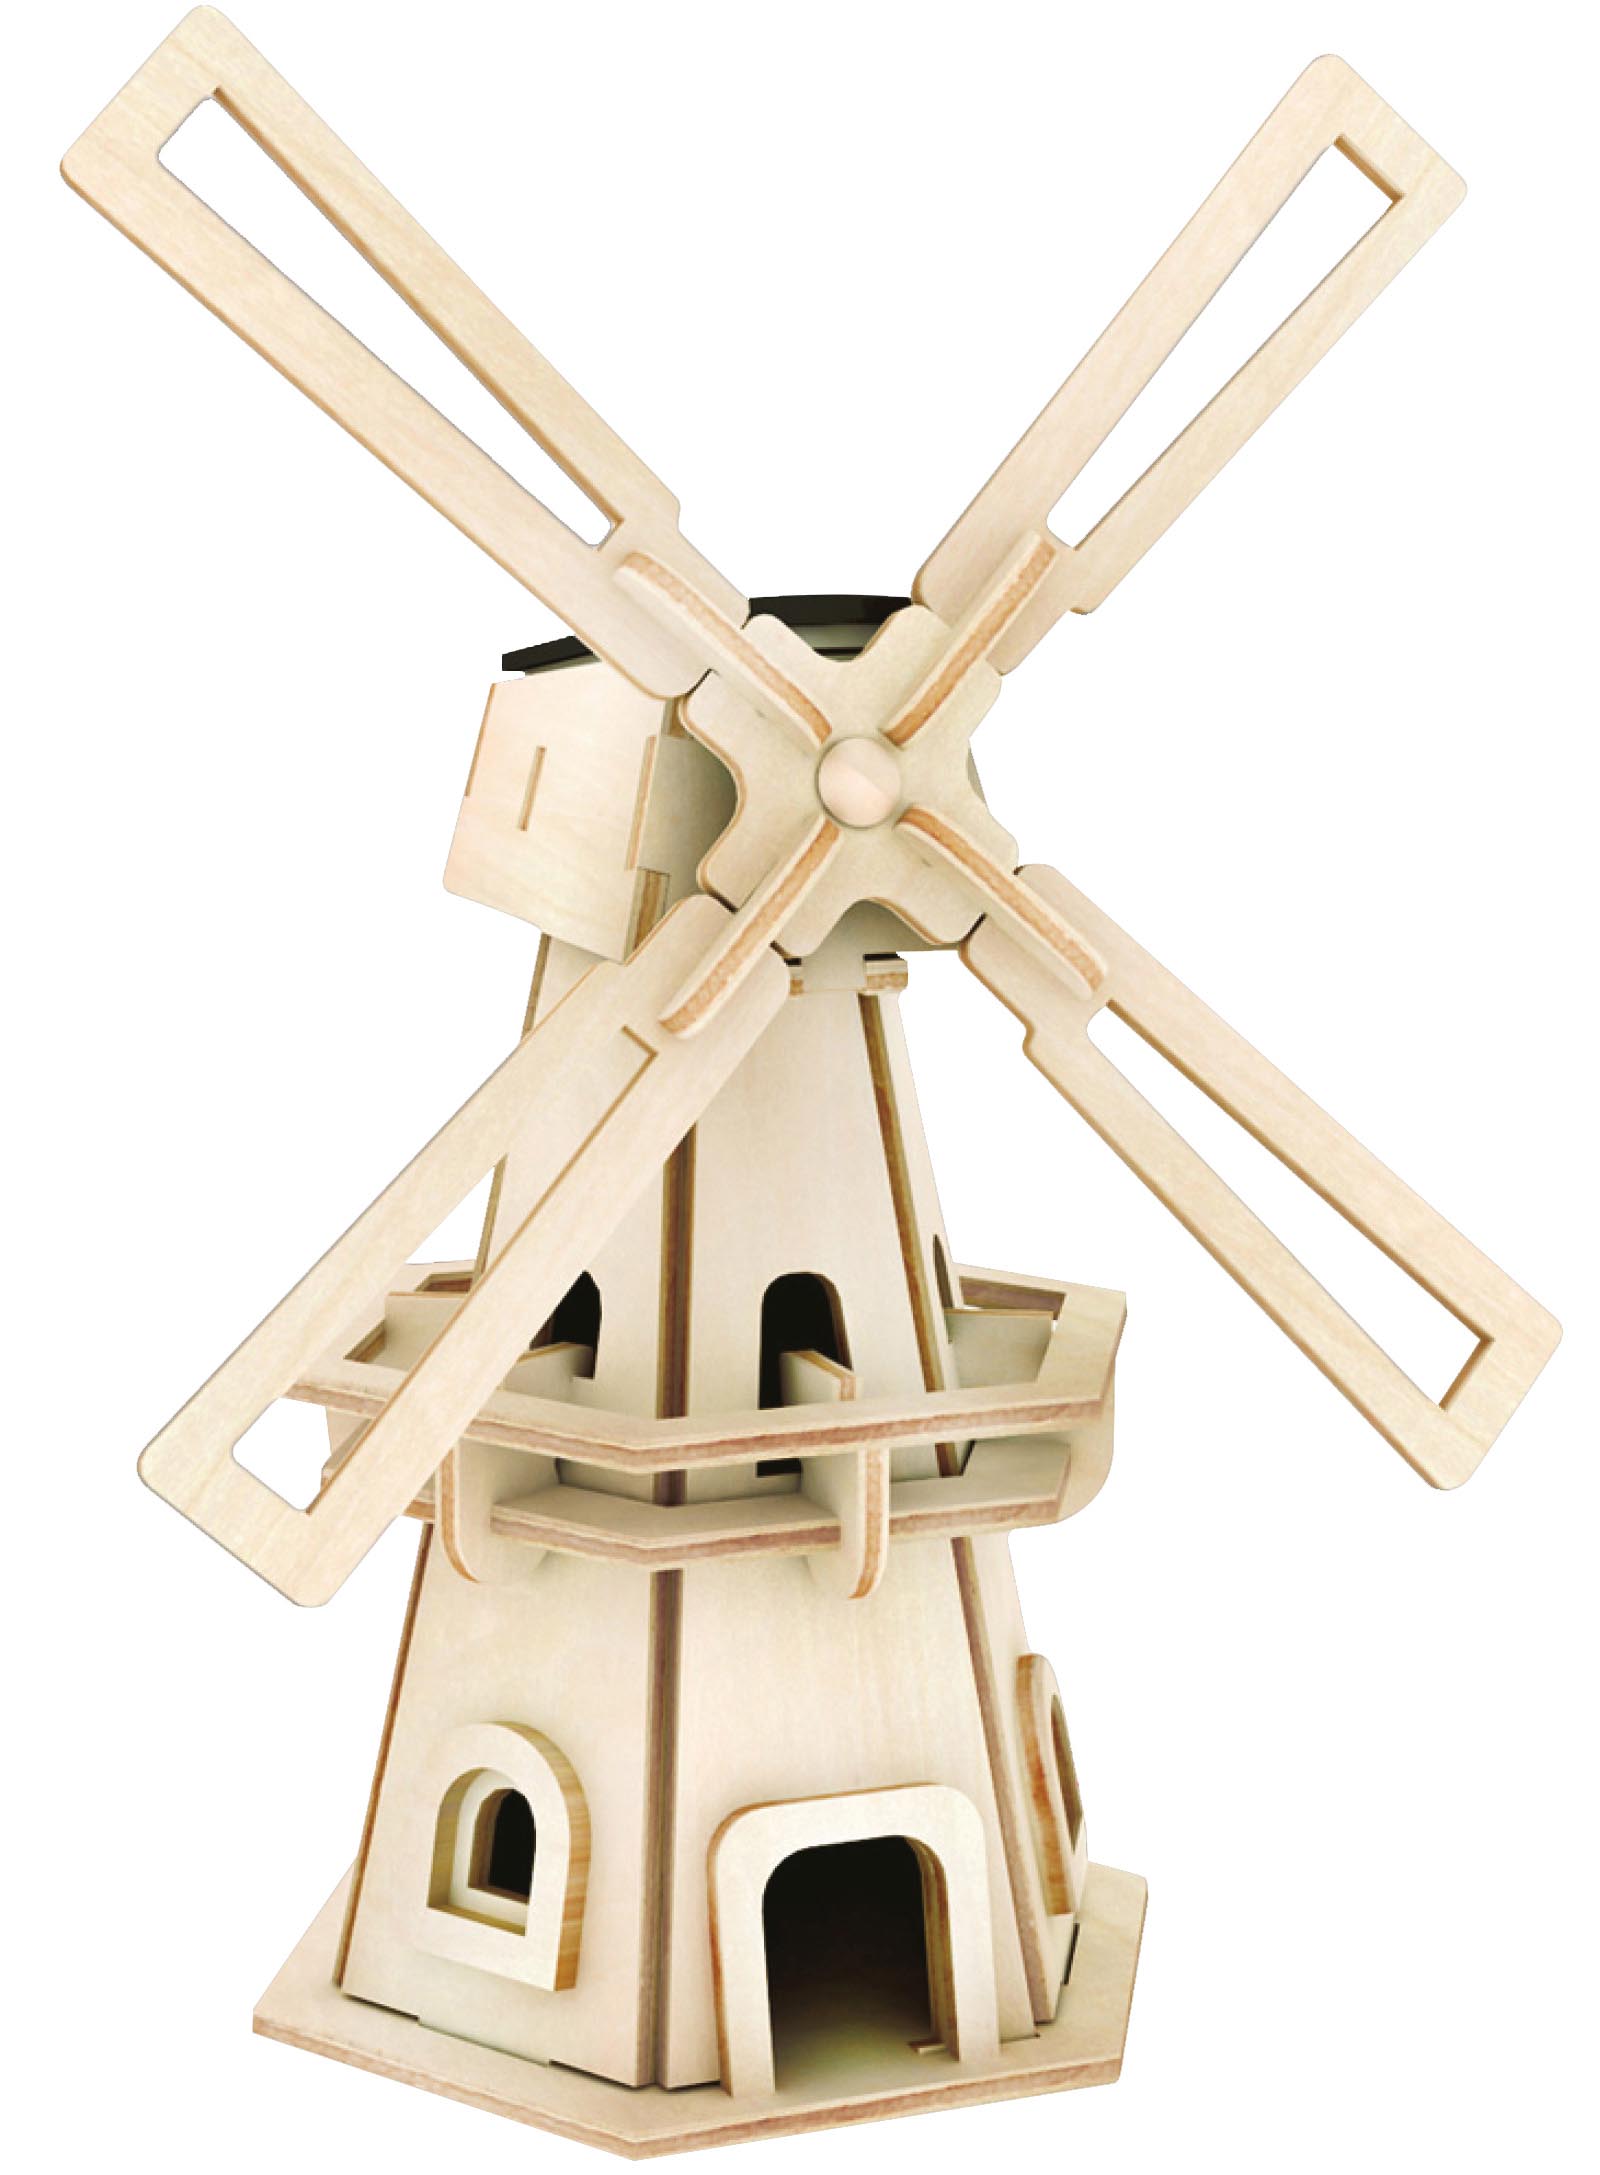 Die WIndmühle besteht aus Holz und kann individuell angemalt werden.